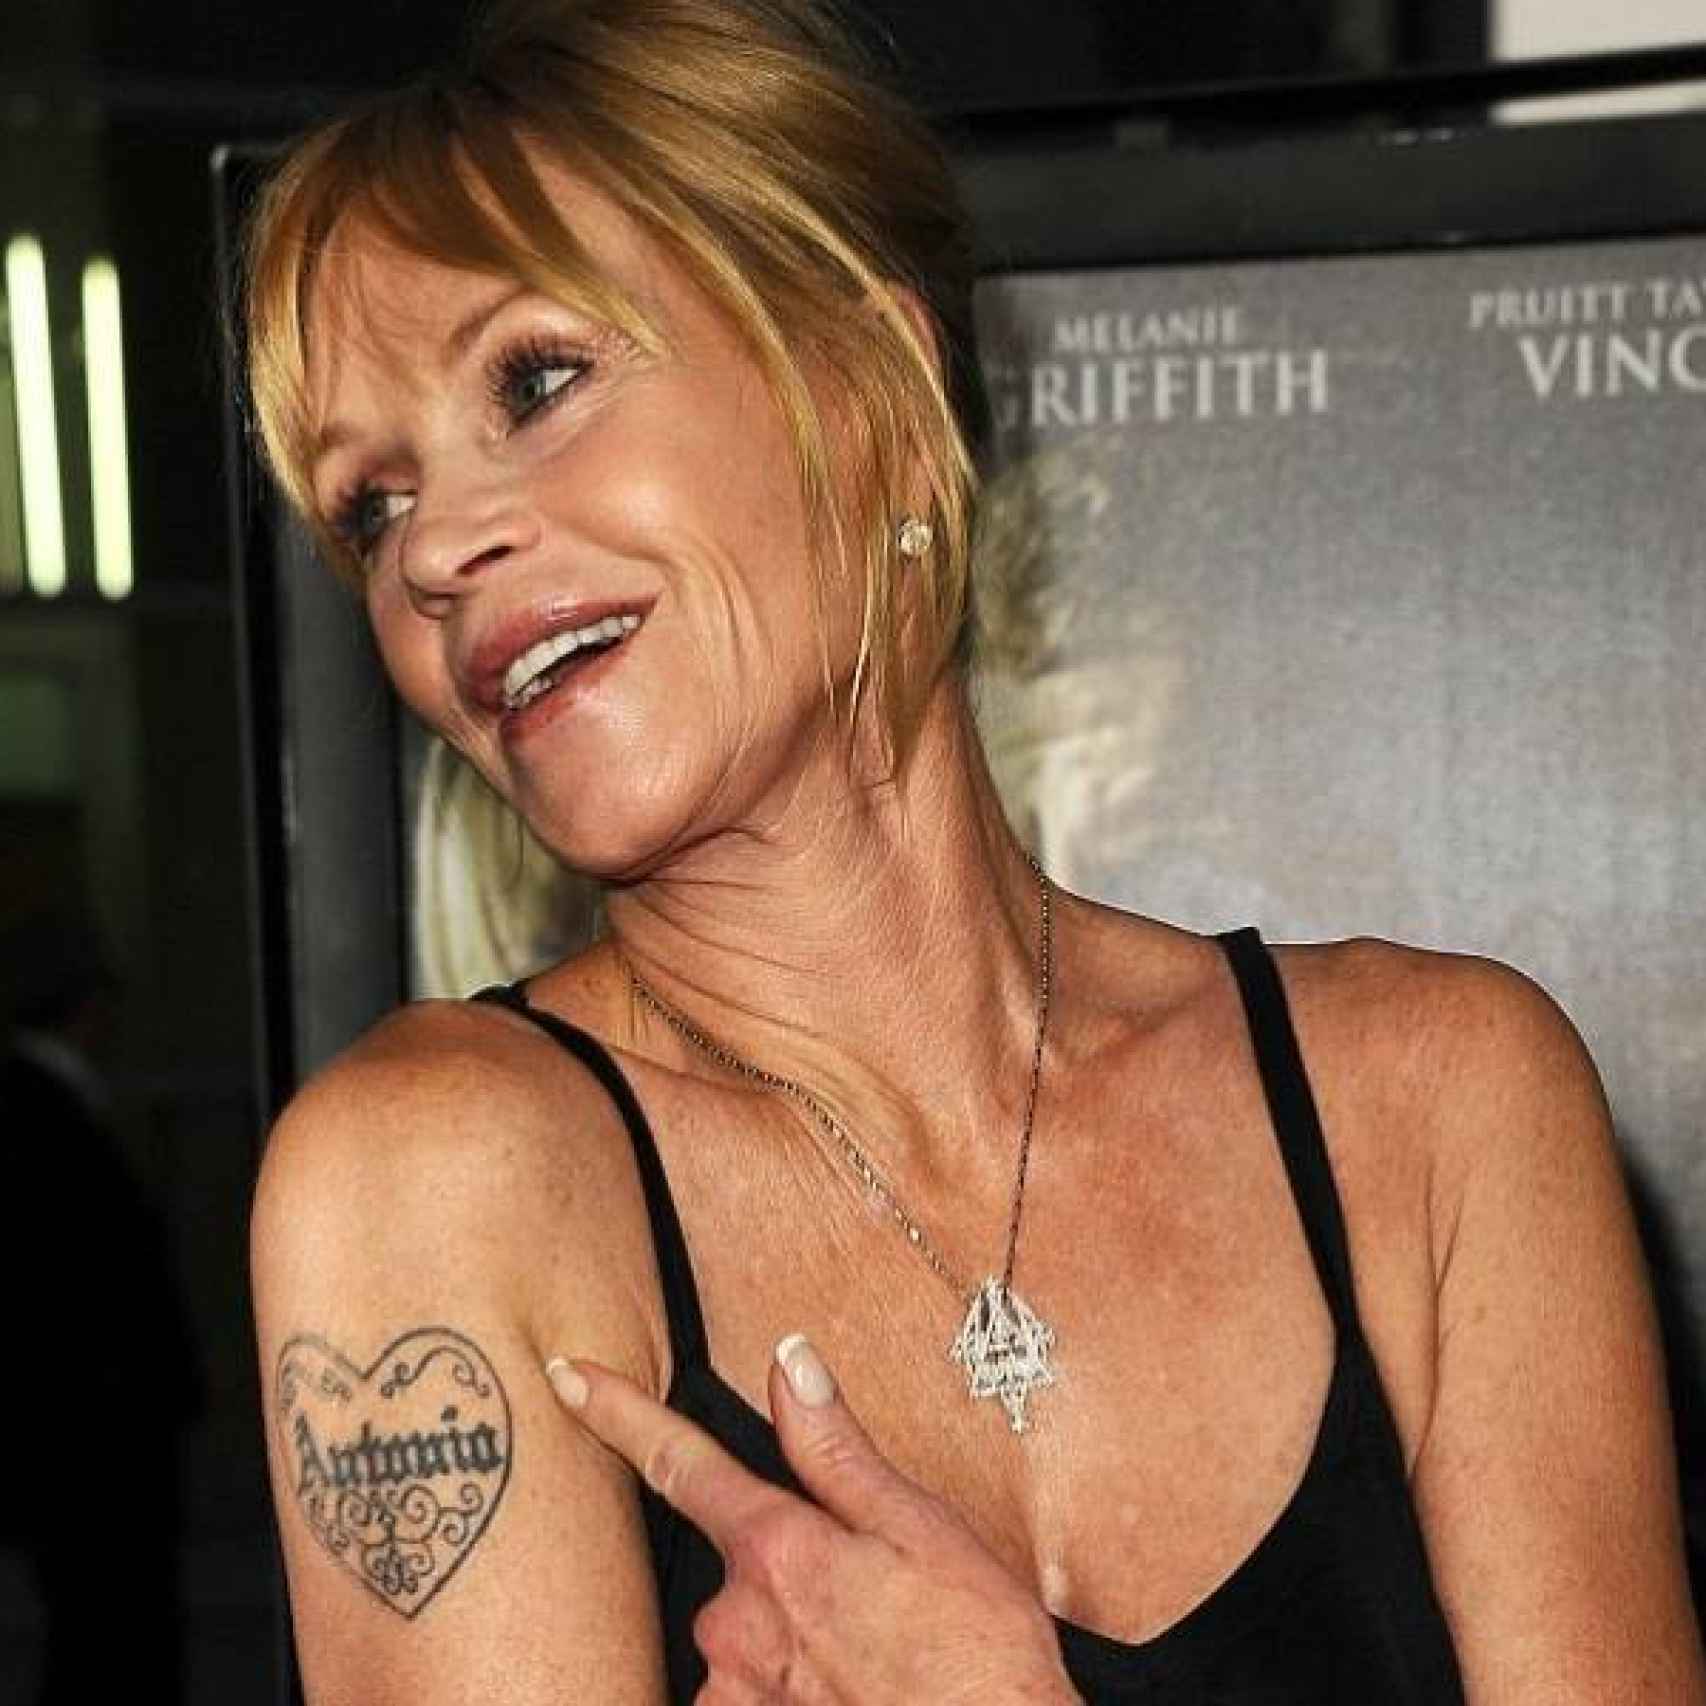 Melanie Griffith mostrando su tatuaje de Antonio Banderas